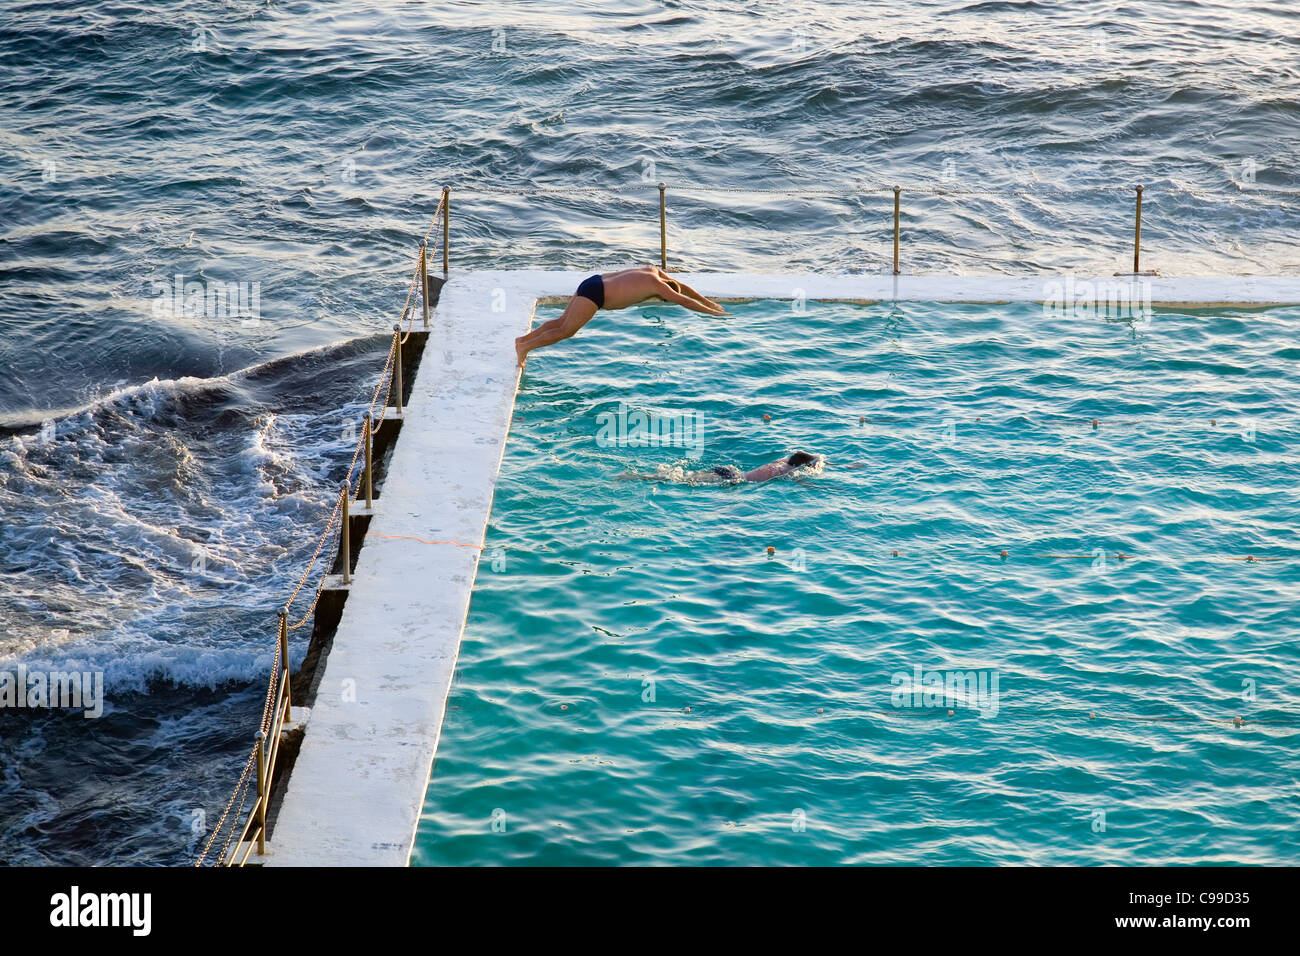 La mattina presto nuotatori a Bondi iceberg piscina anche noto come i bagni di Bondi. La spiaggia di Bondi, Sydney, Nuovo Galles del Sud, Australia Foto Stock